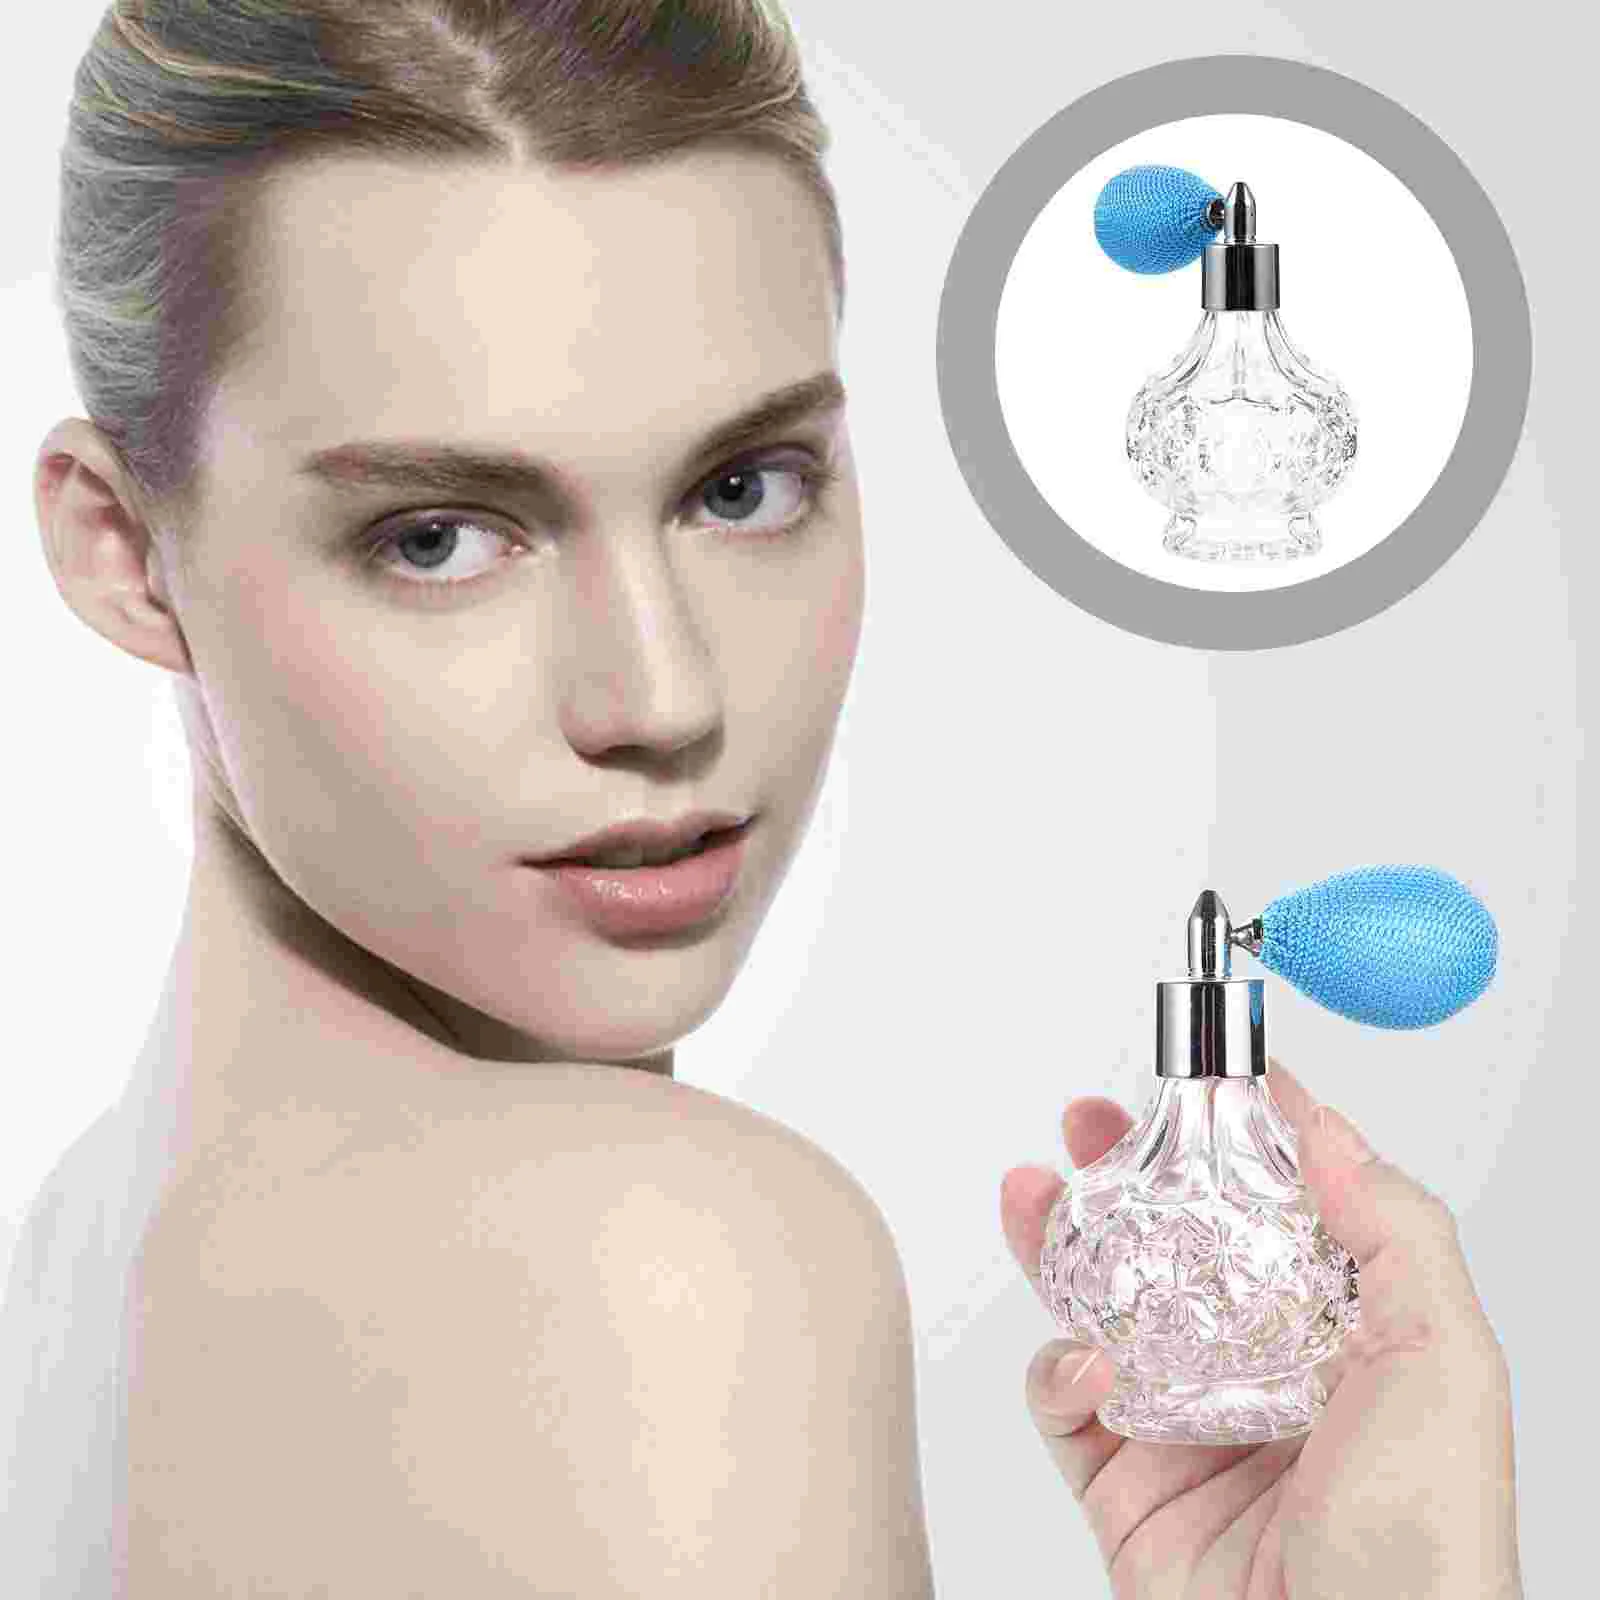 

Glass Perfume Bottle Mist Spray Bottle Travel Refillable Sprayer Airbag Perfume Sprayer Fragrance Perfume Dispenser